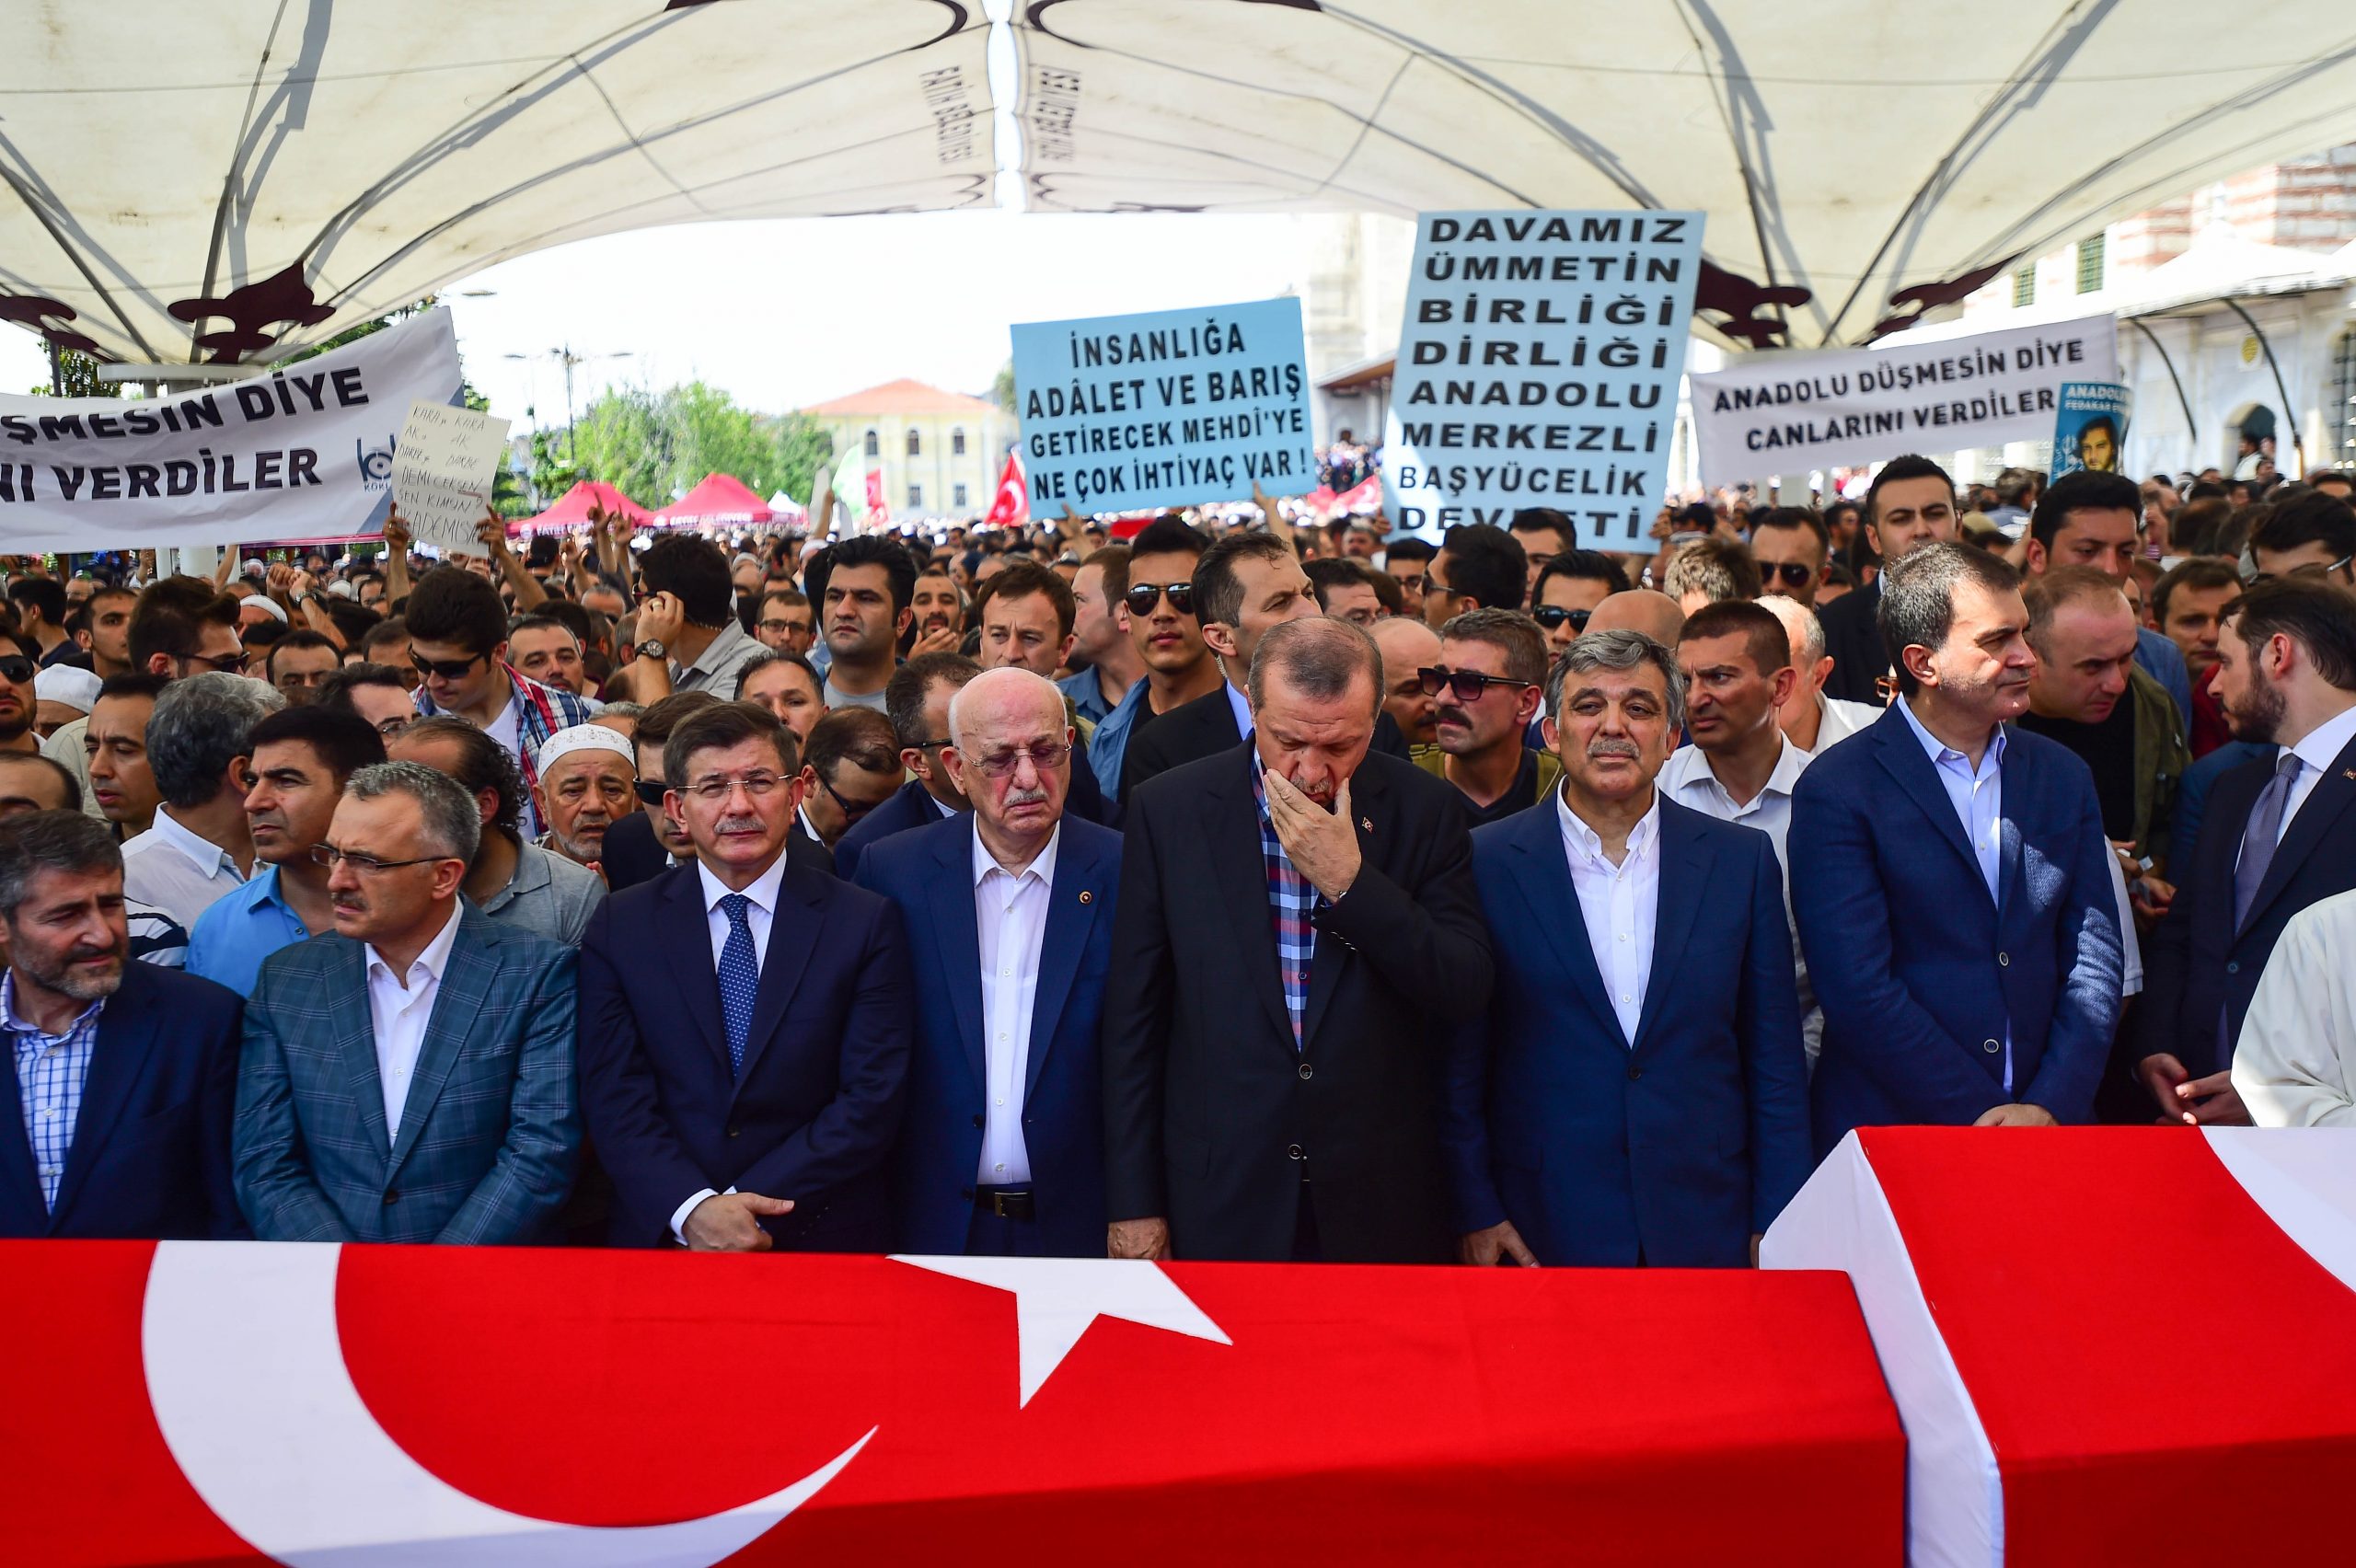 Abdullah Gül photo